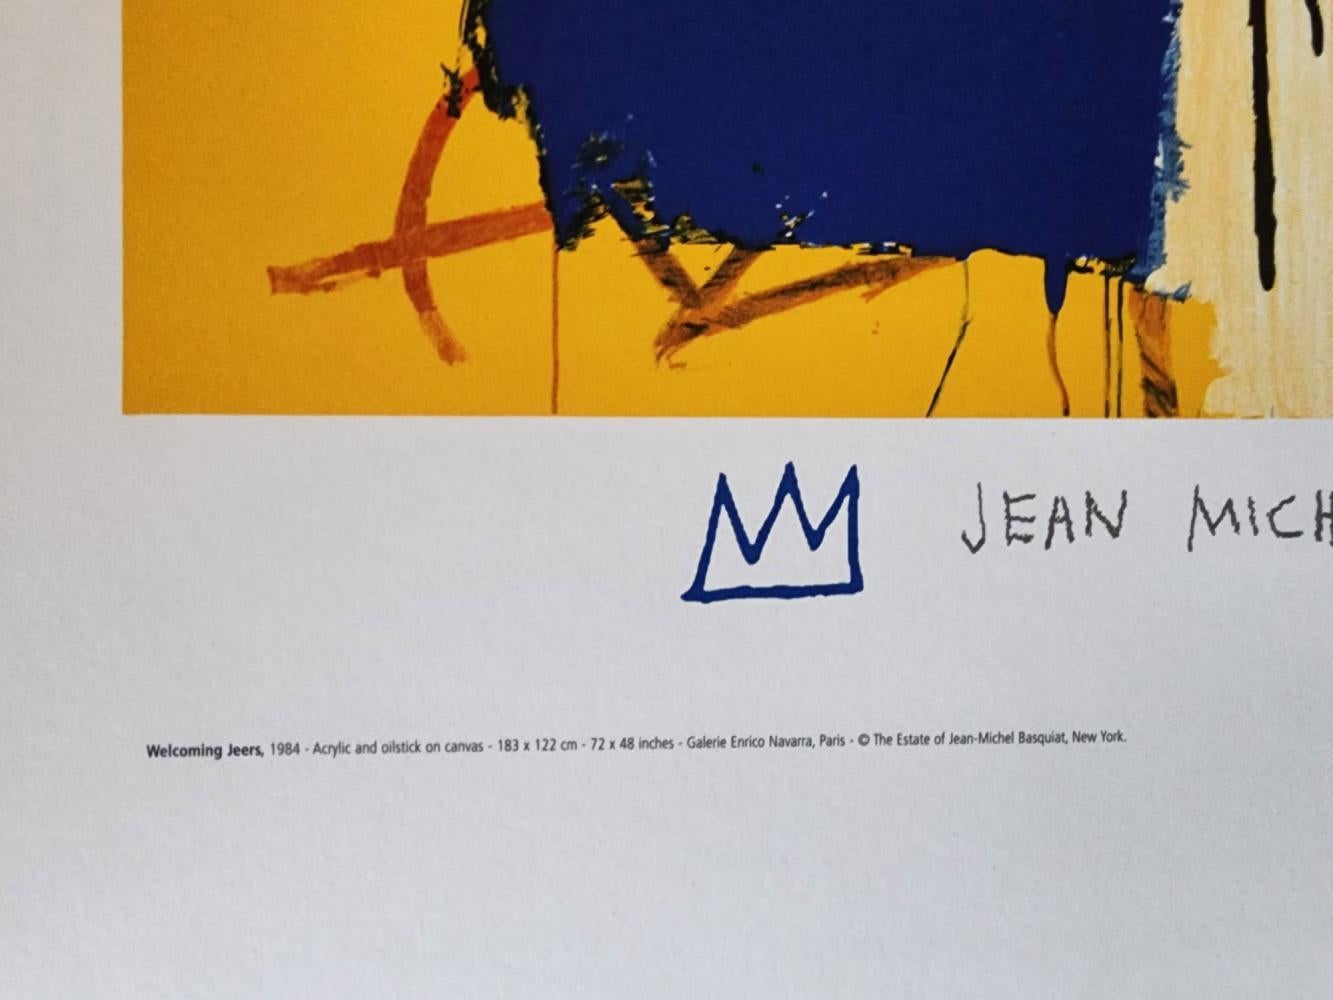 JEAN MICHEL BASQUIAT, « WELCOMING JEERS 1997 » ÉDITION LIMITÉE VERY RARE ESTATE LI - Pop Art Print par after Jean-Michel Basquiat